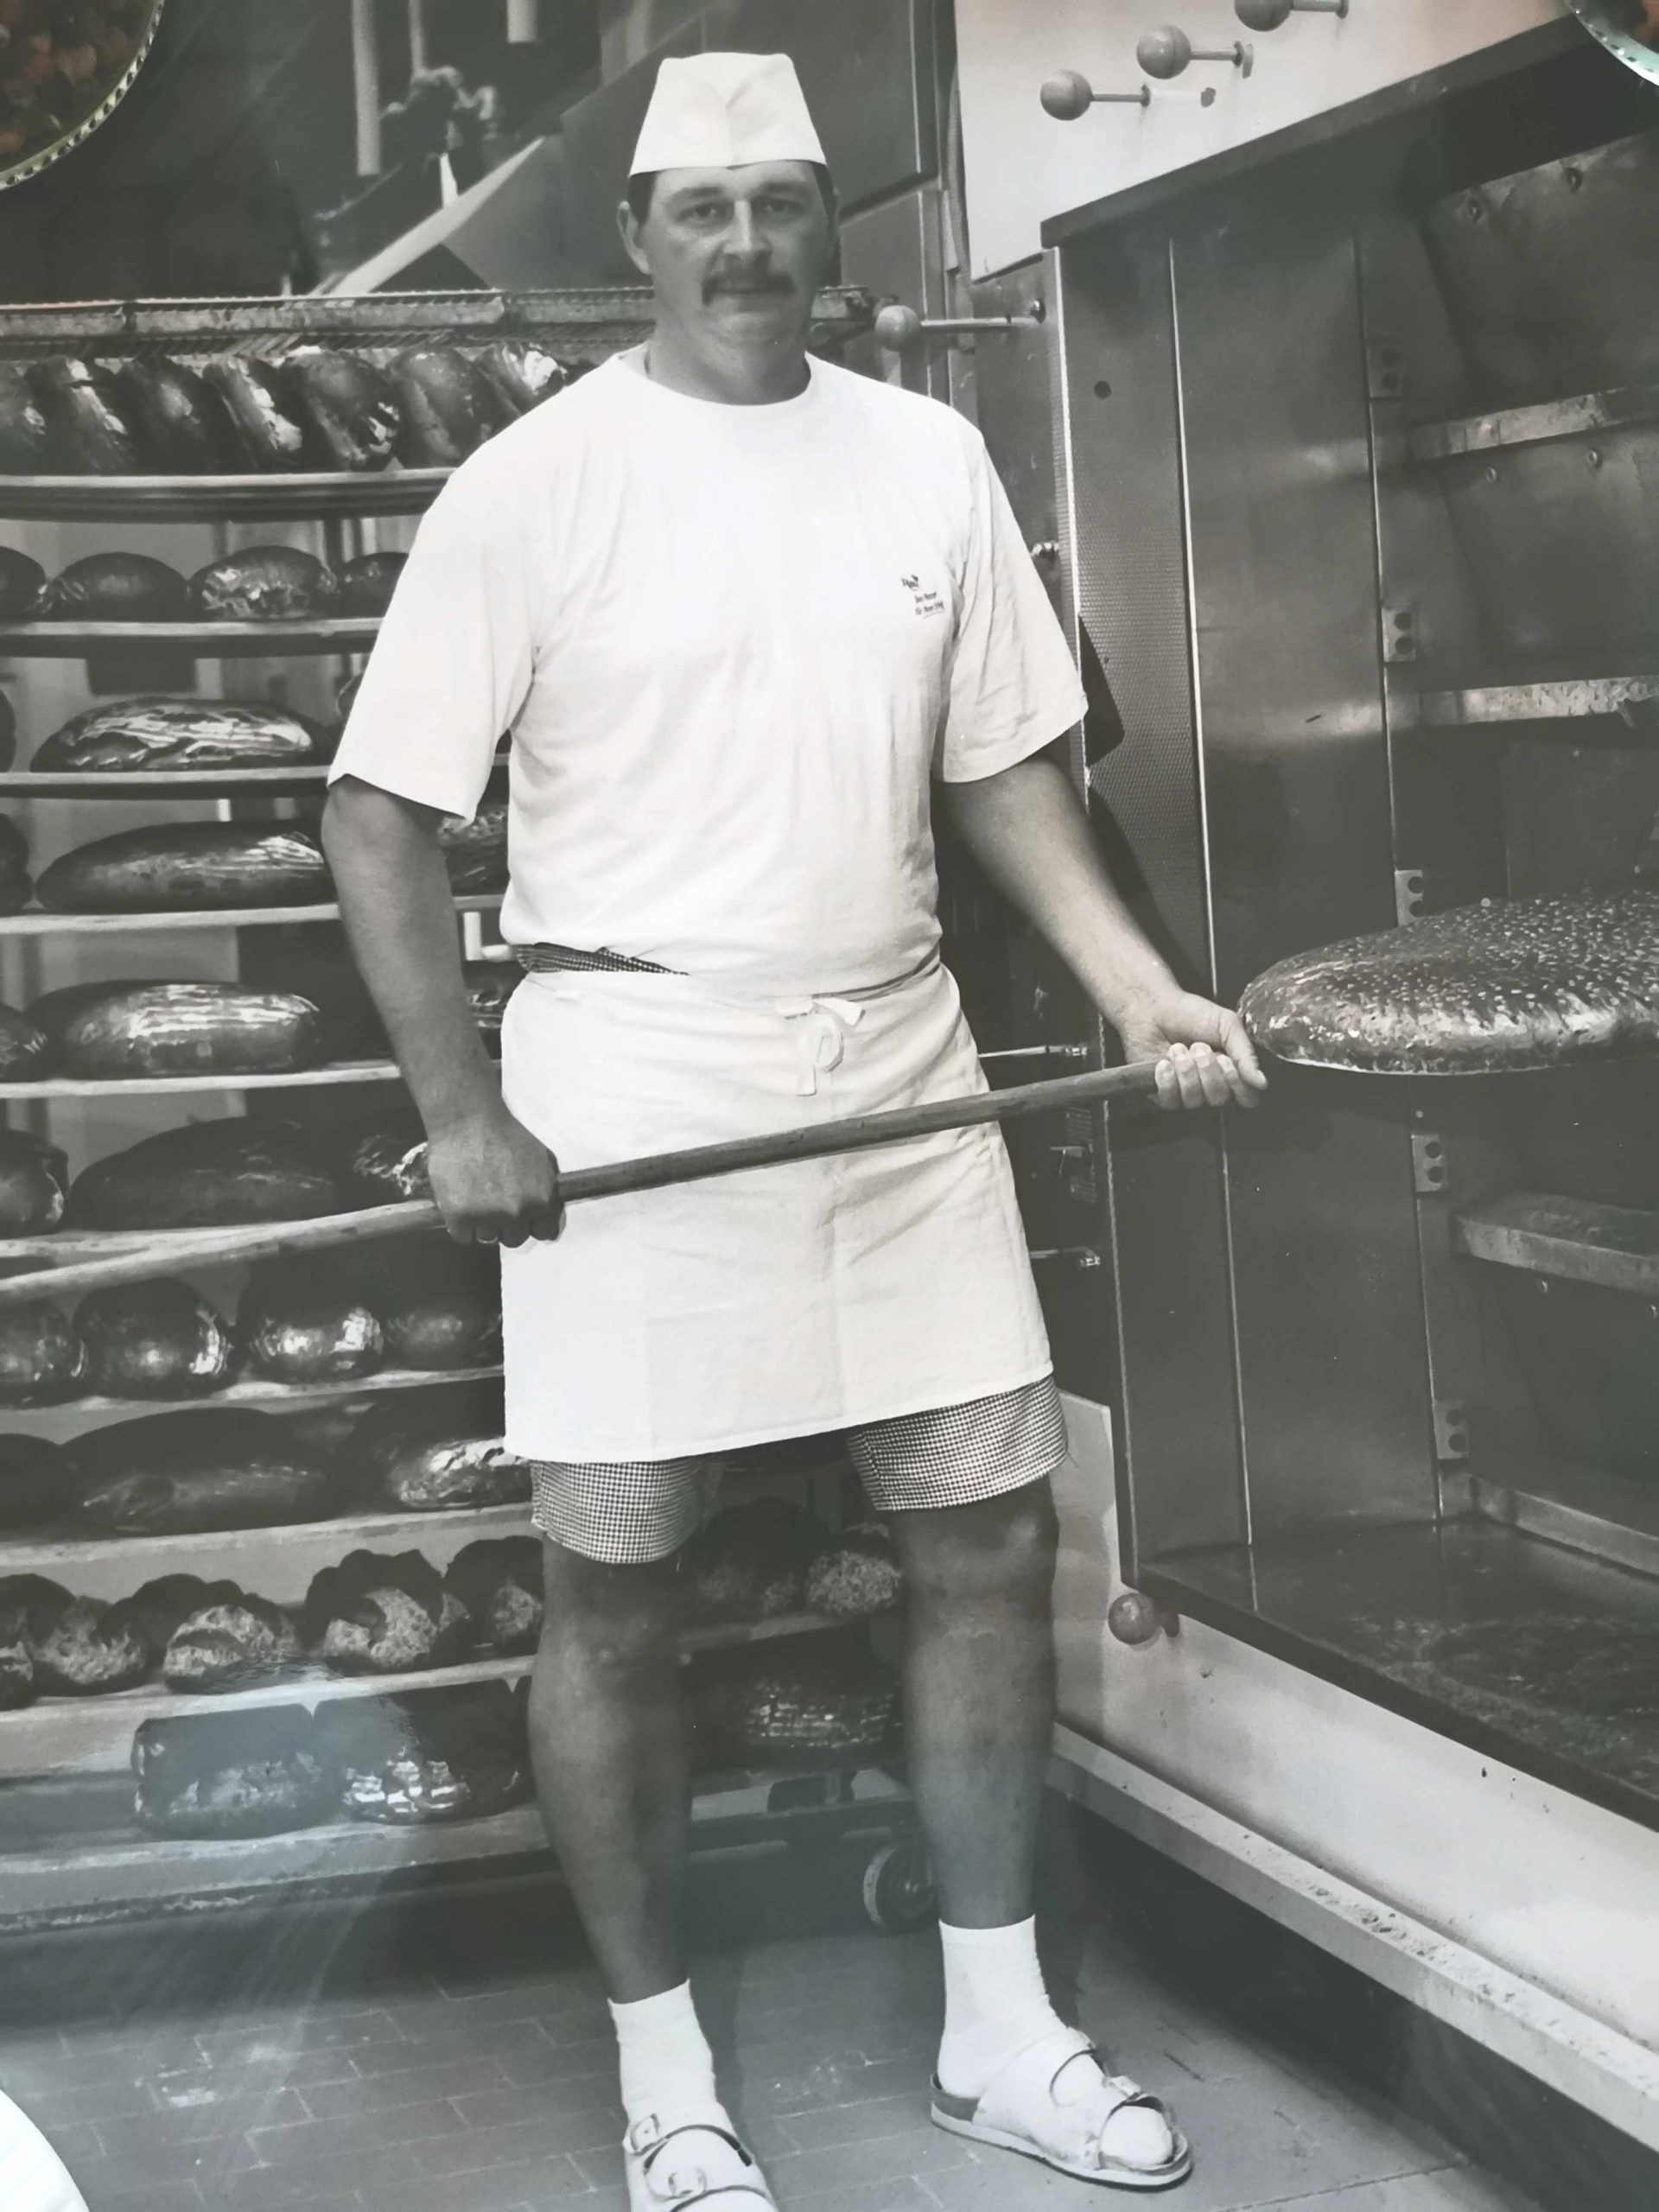 Bernd beim backen von frischem handgemachtem Brot                           